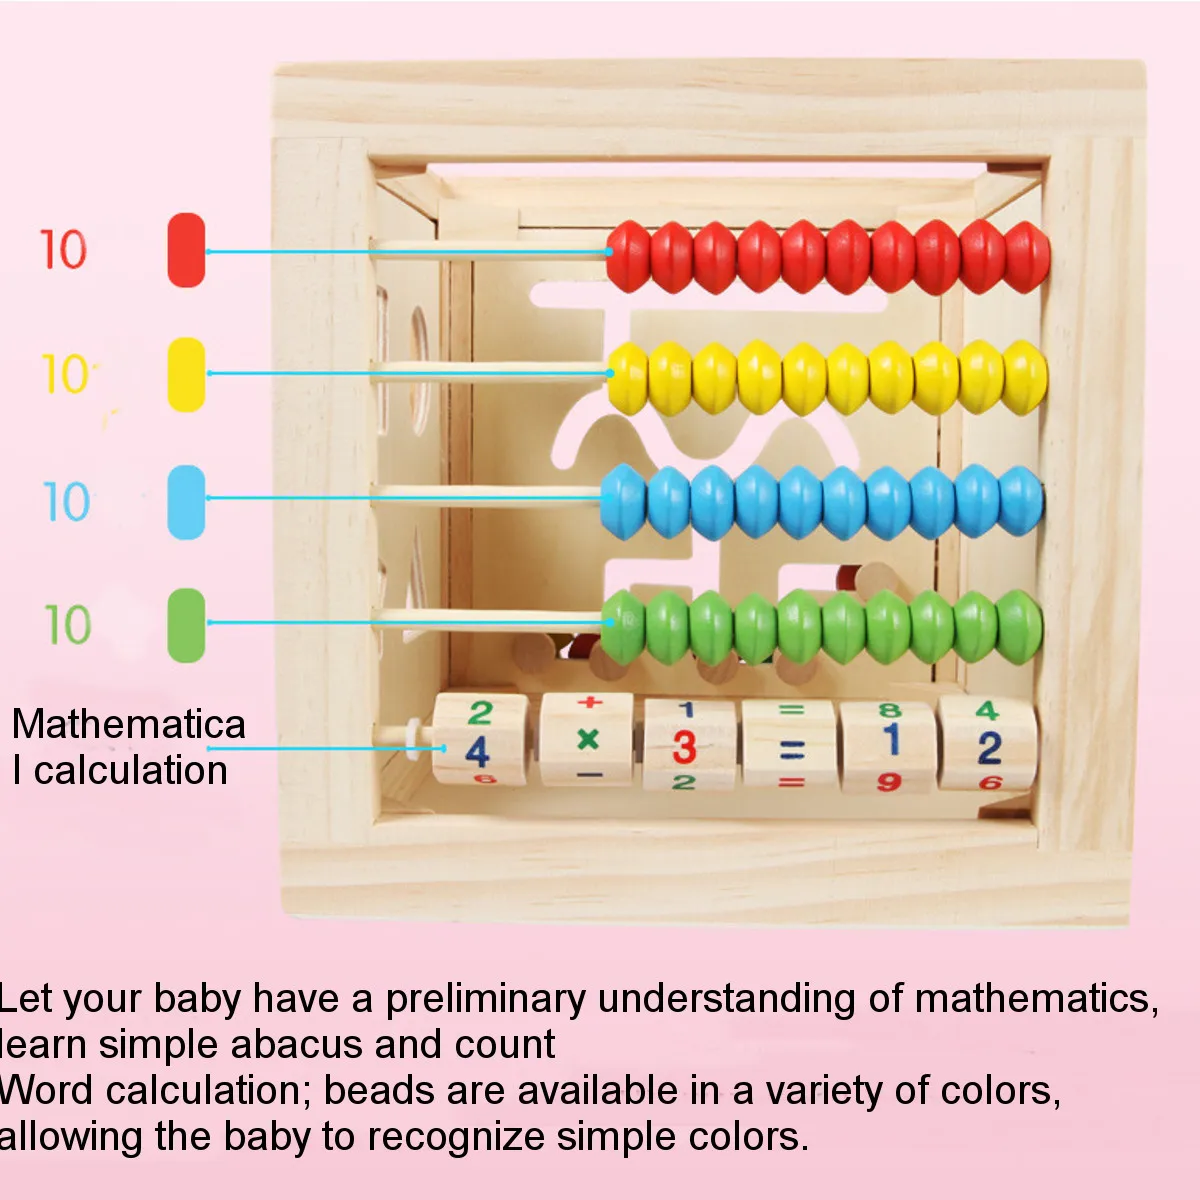 5 в 1 детский Деревянный Цветной Кубик для активных занятий, многоцелевой обучающий лабиринт, игрушка в форме дерева, цветной сортировщик для детей